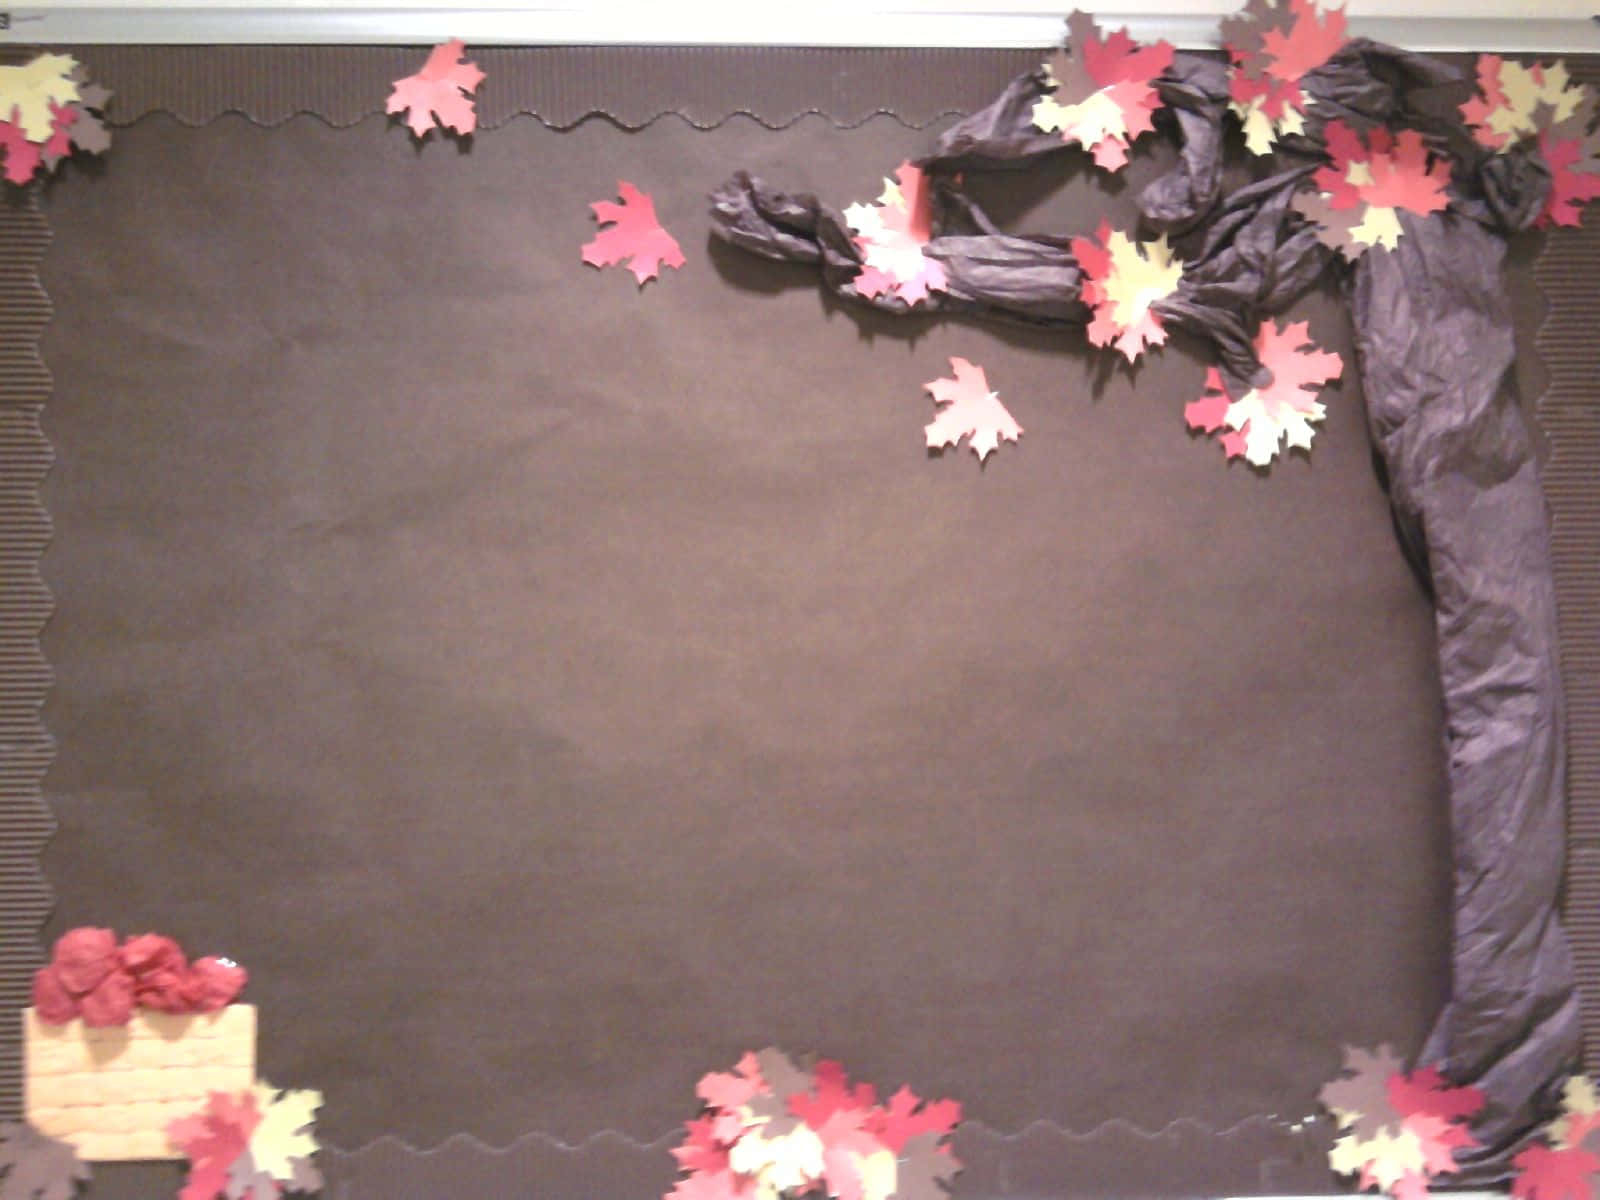 Einebraune Pinnwand Mit Einem Baum Und Blättern.